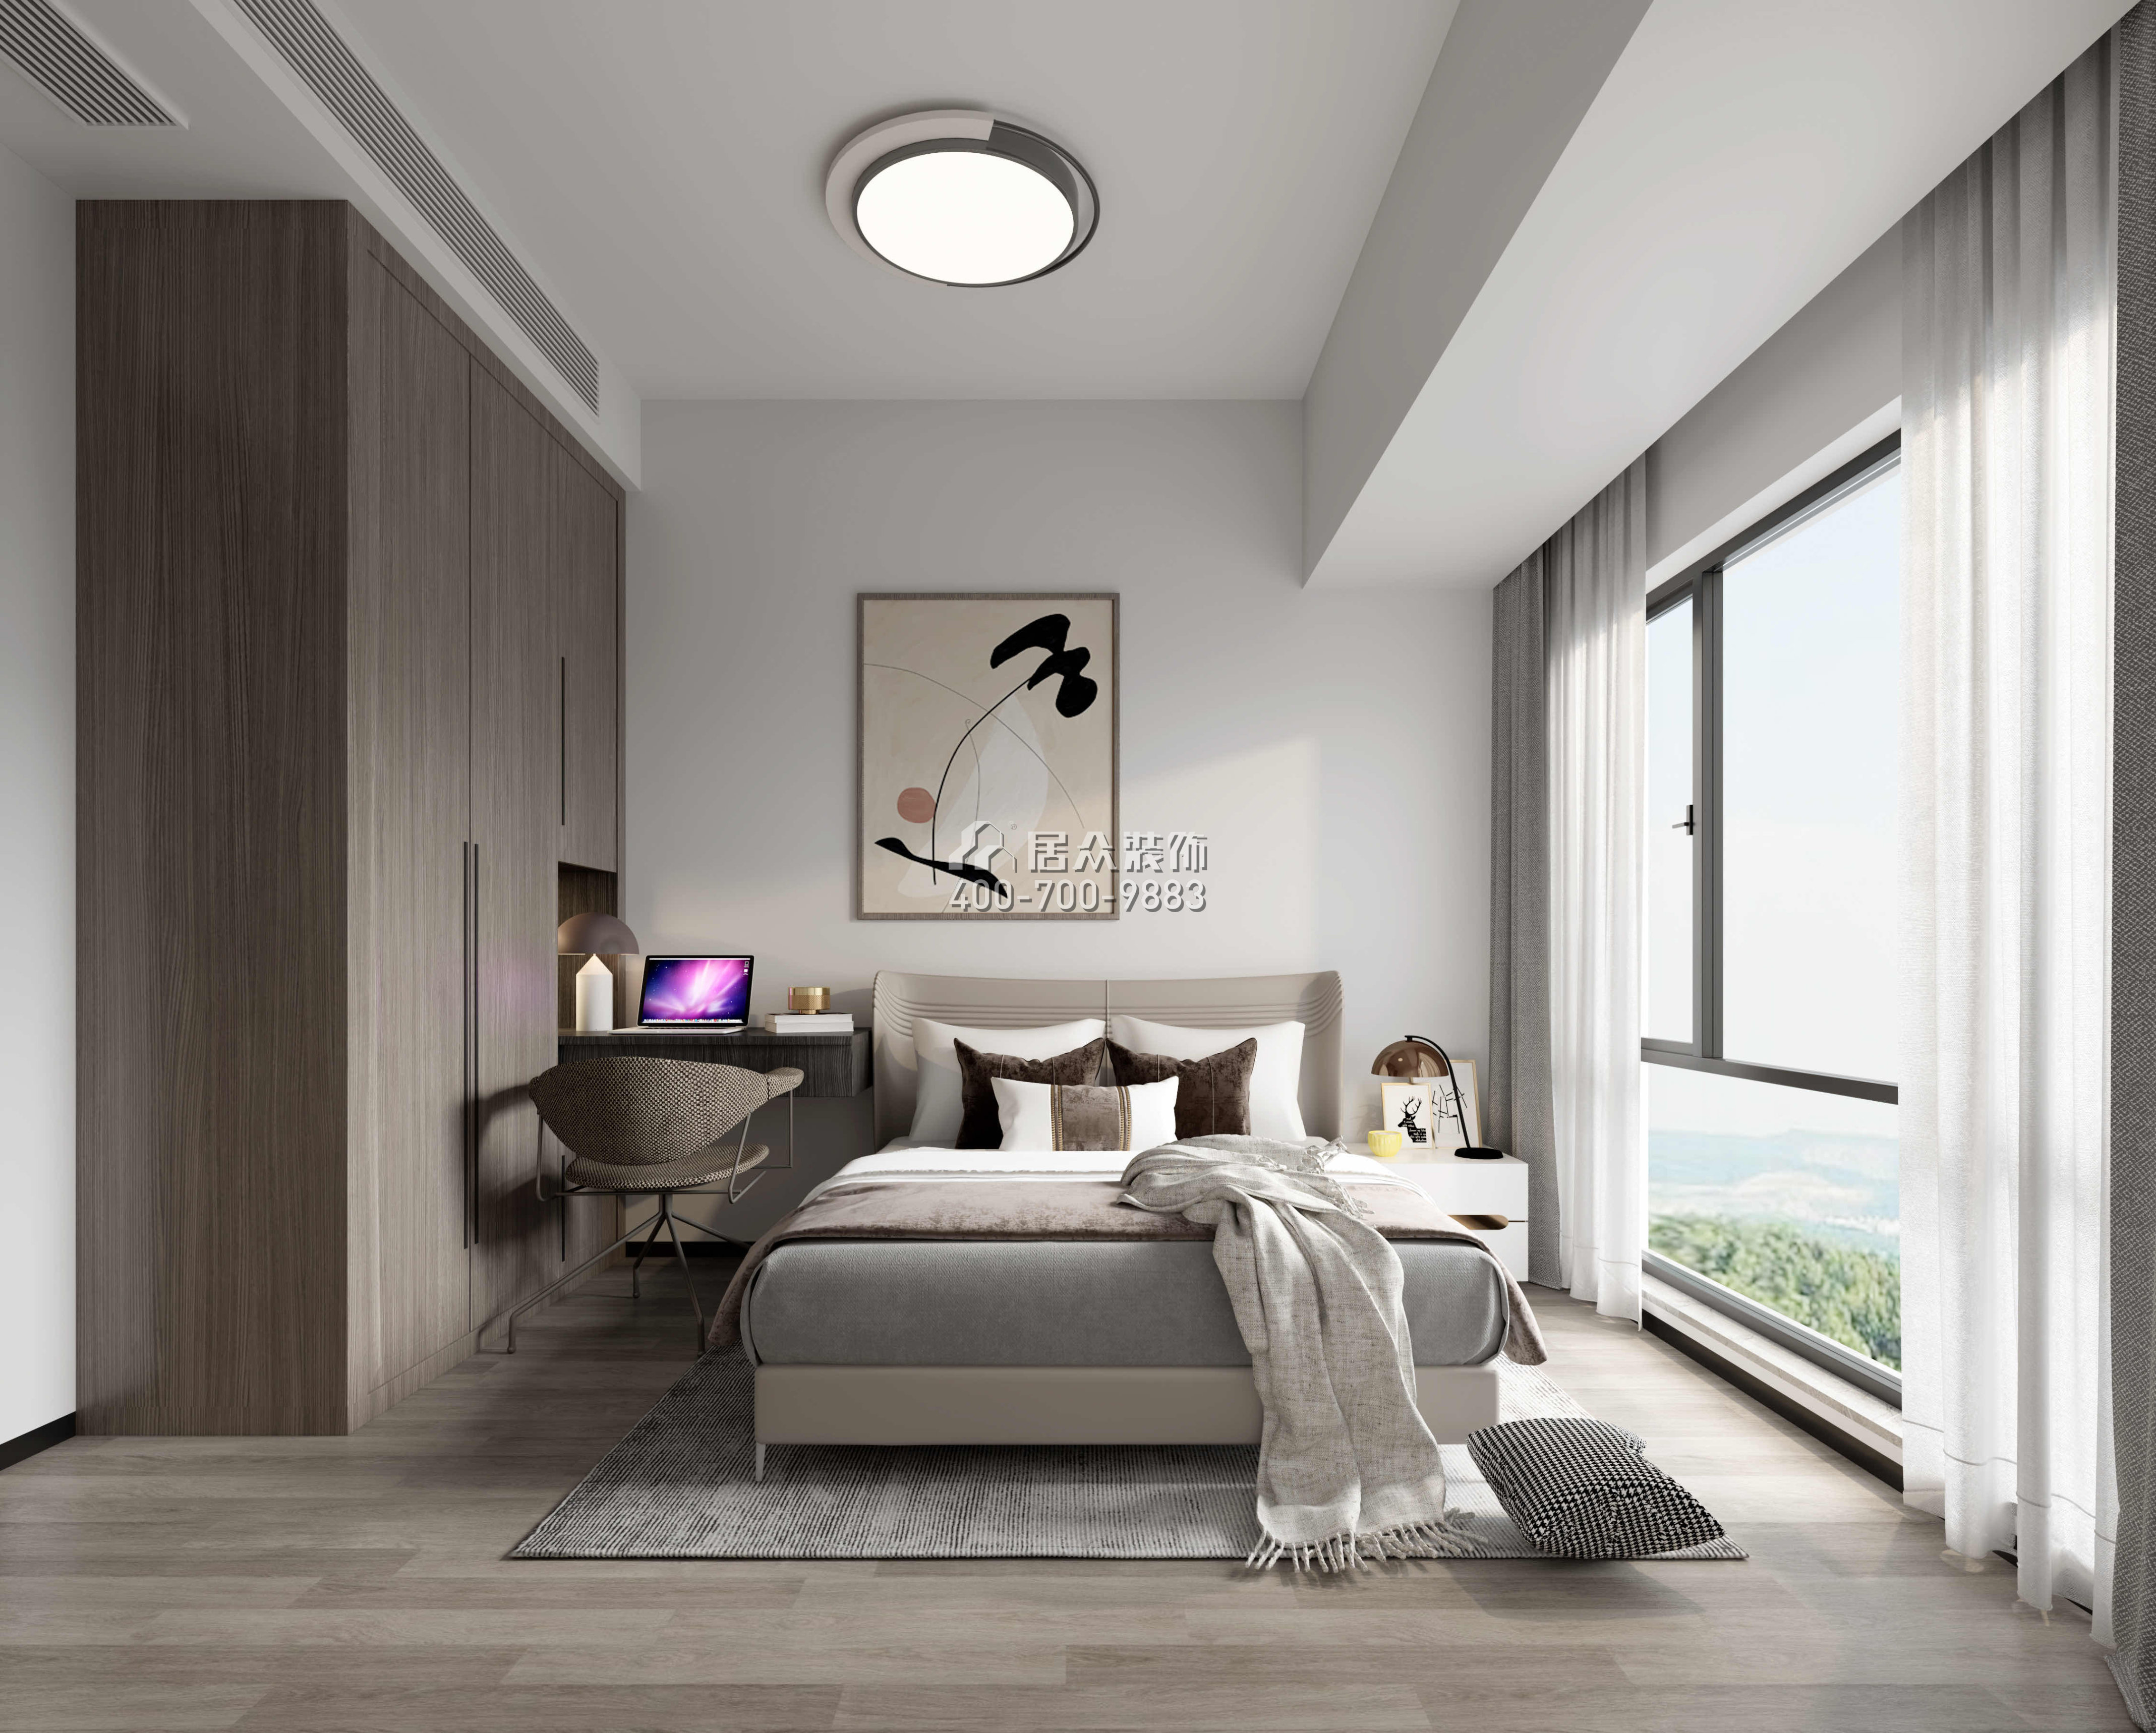 鼎胜金域世家120平方米现代简约风格平层户型卧室装修效果图